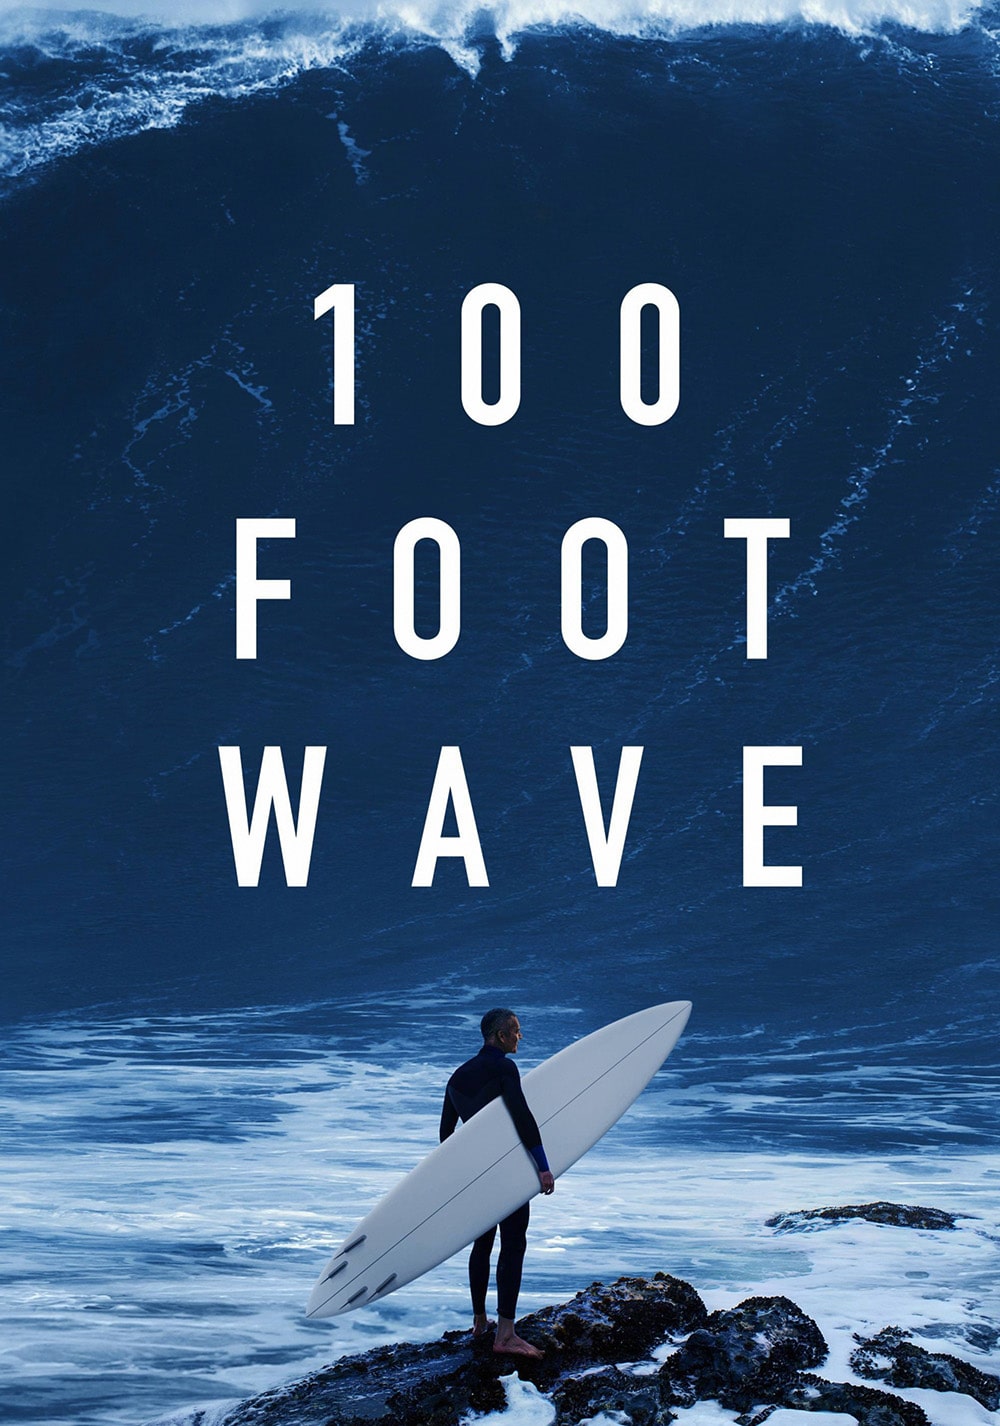 موج ۱۰۰ فوتی (100 Foot Wave)